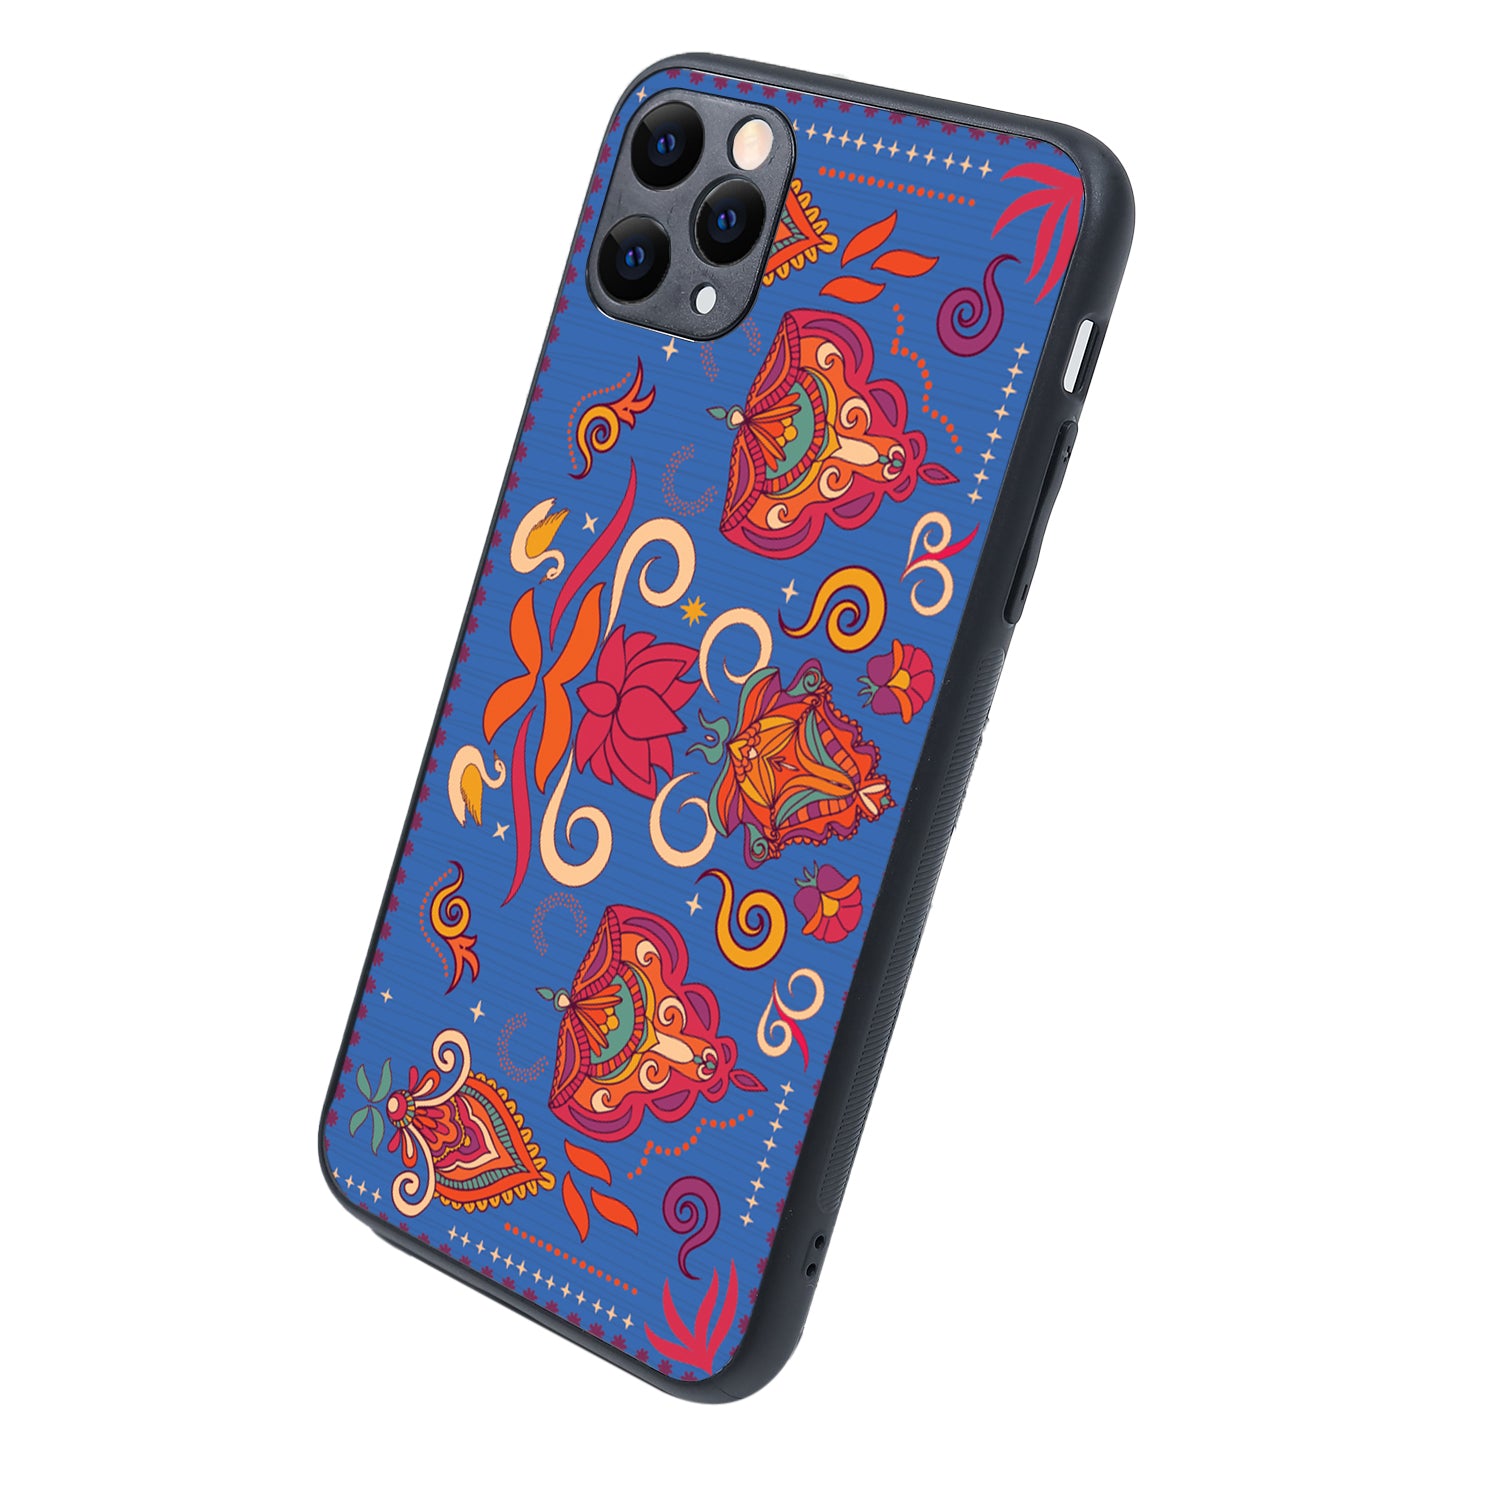 Spiritual Design iPhone 11 Pro Max Case